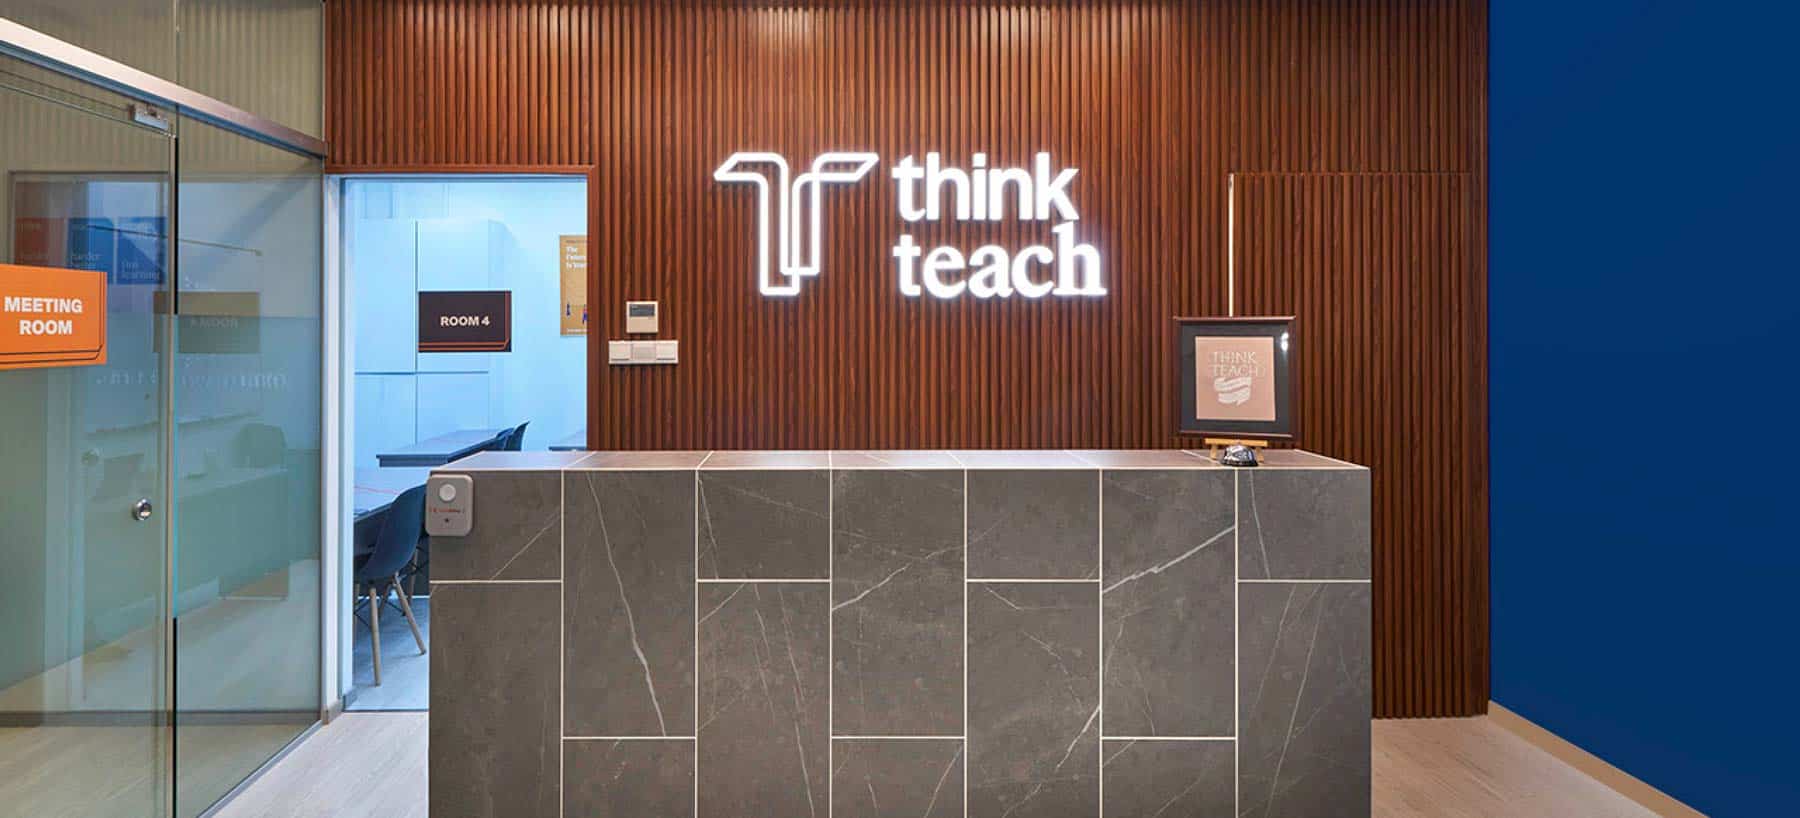 think teach academy foyer